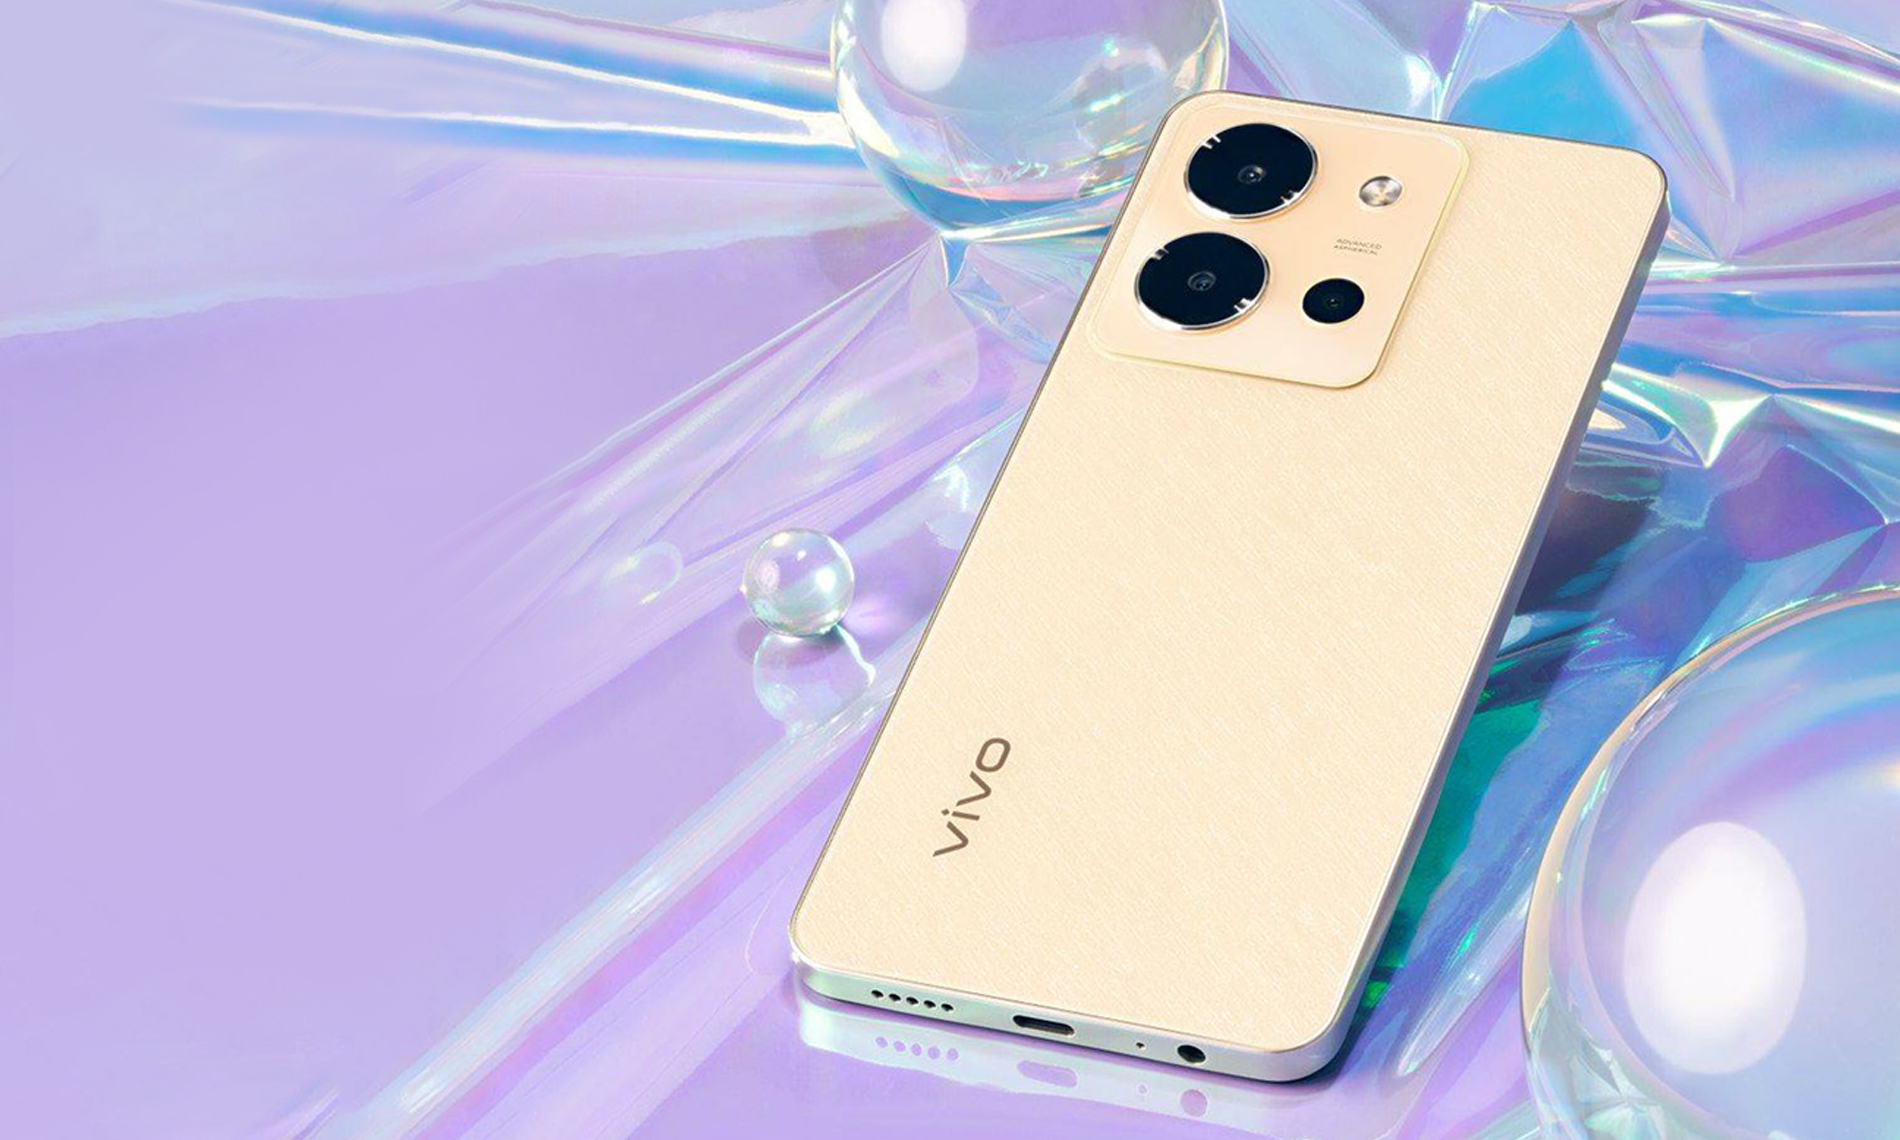 vivo predstavlja novi Y36, idealan telefon koji ide u korak sa savremenim stilom života